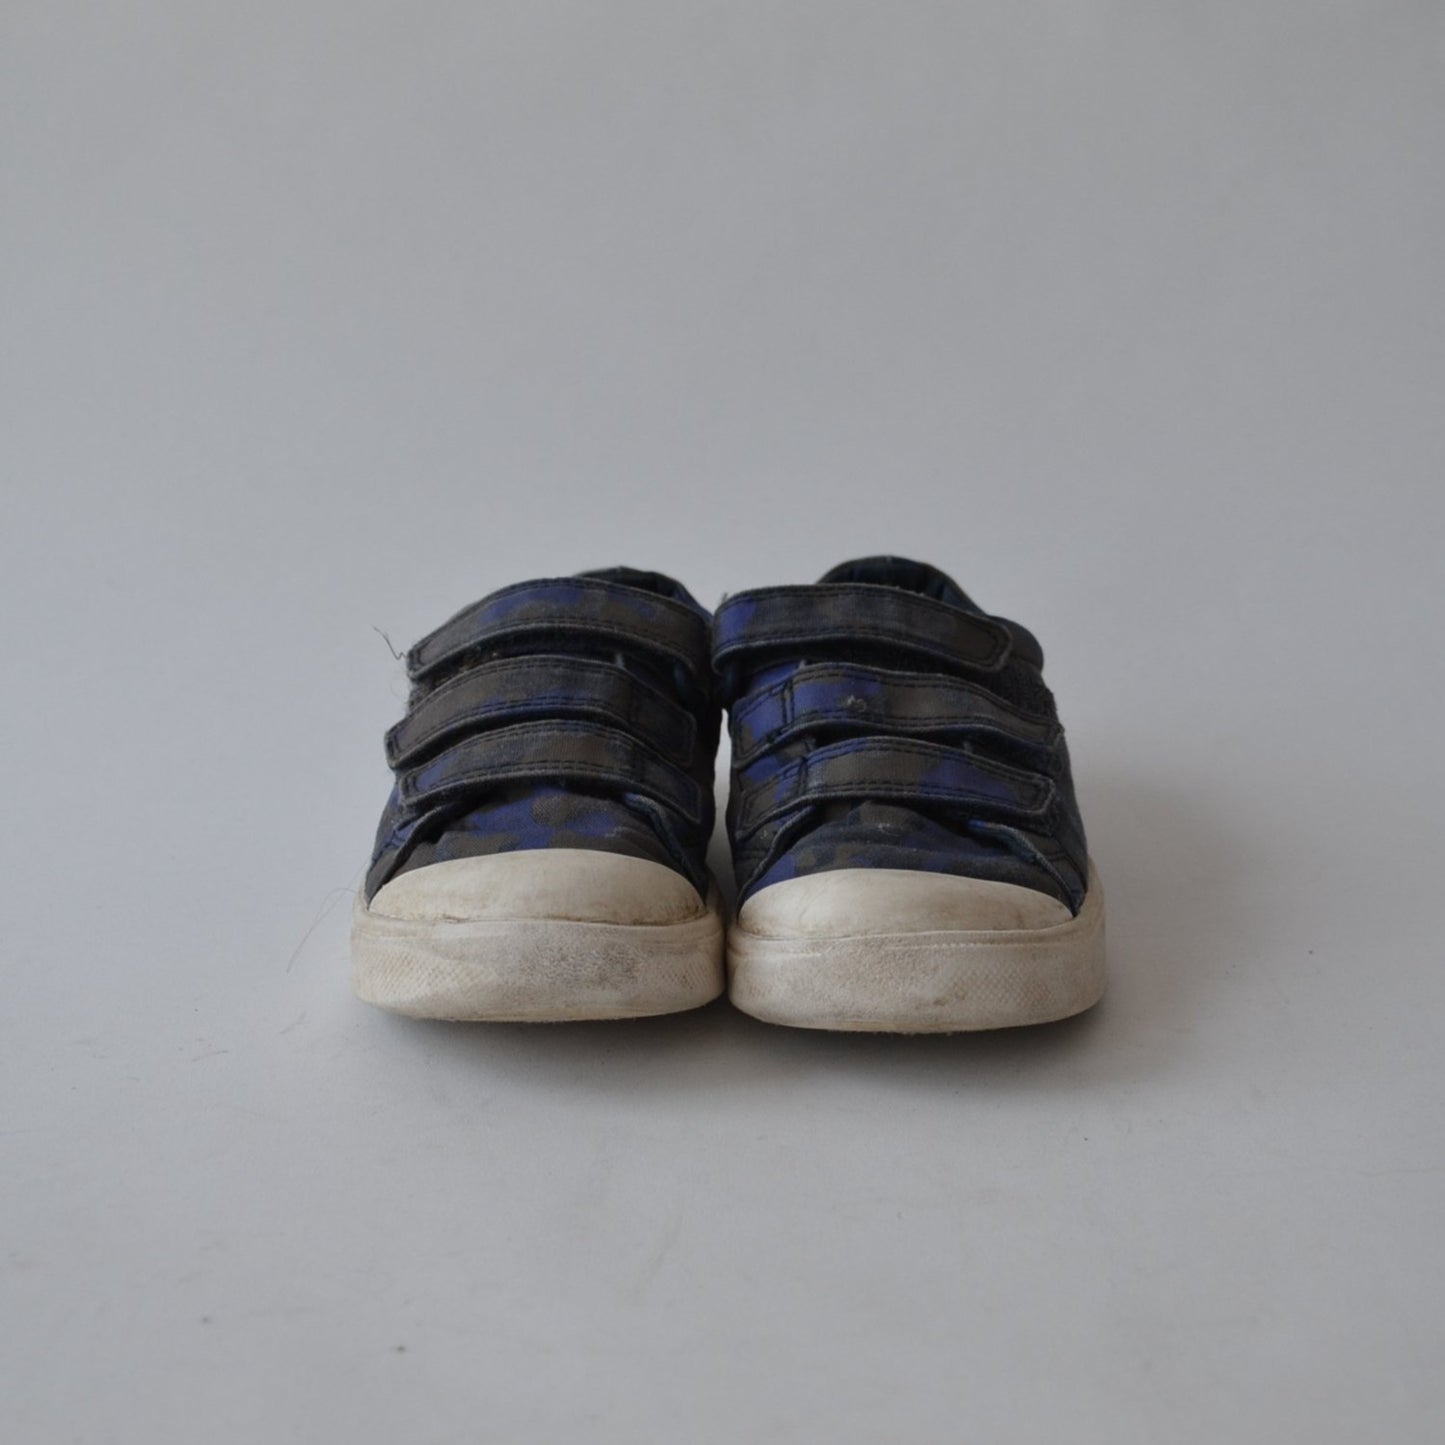 Clarks Blue Trainers Shoe Size 11 (jr)